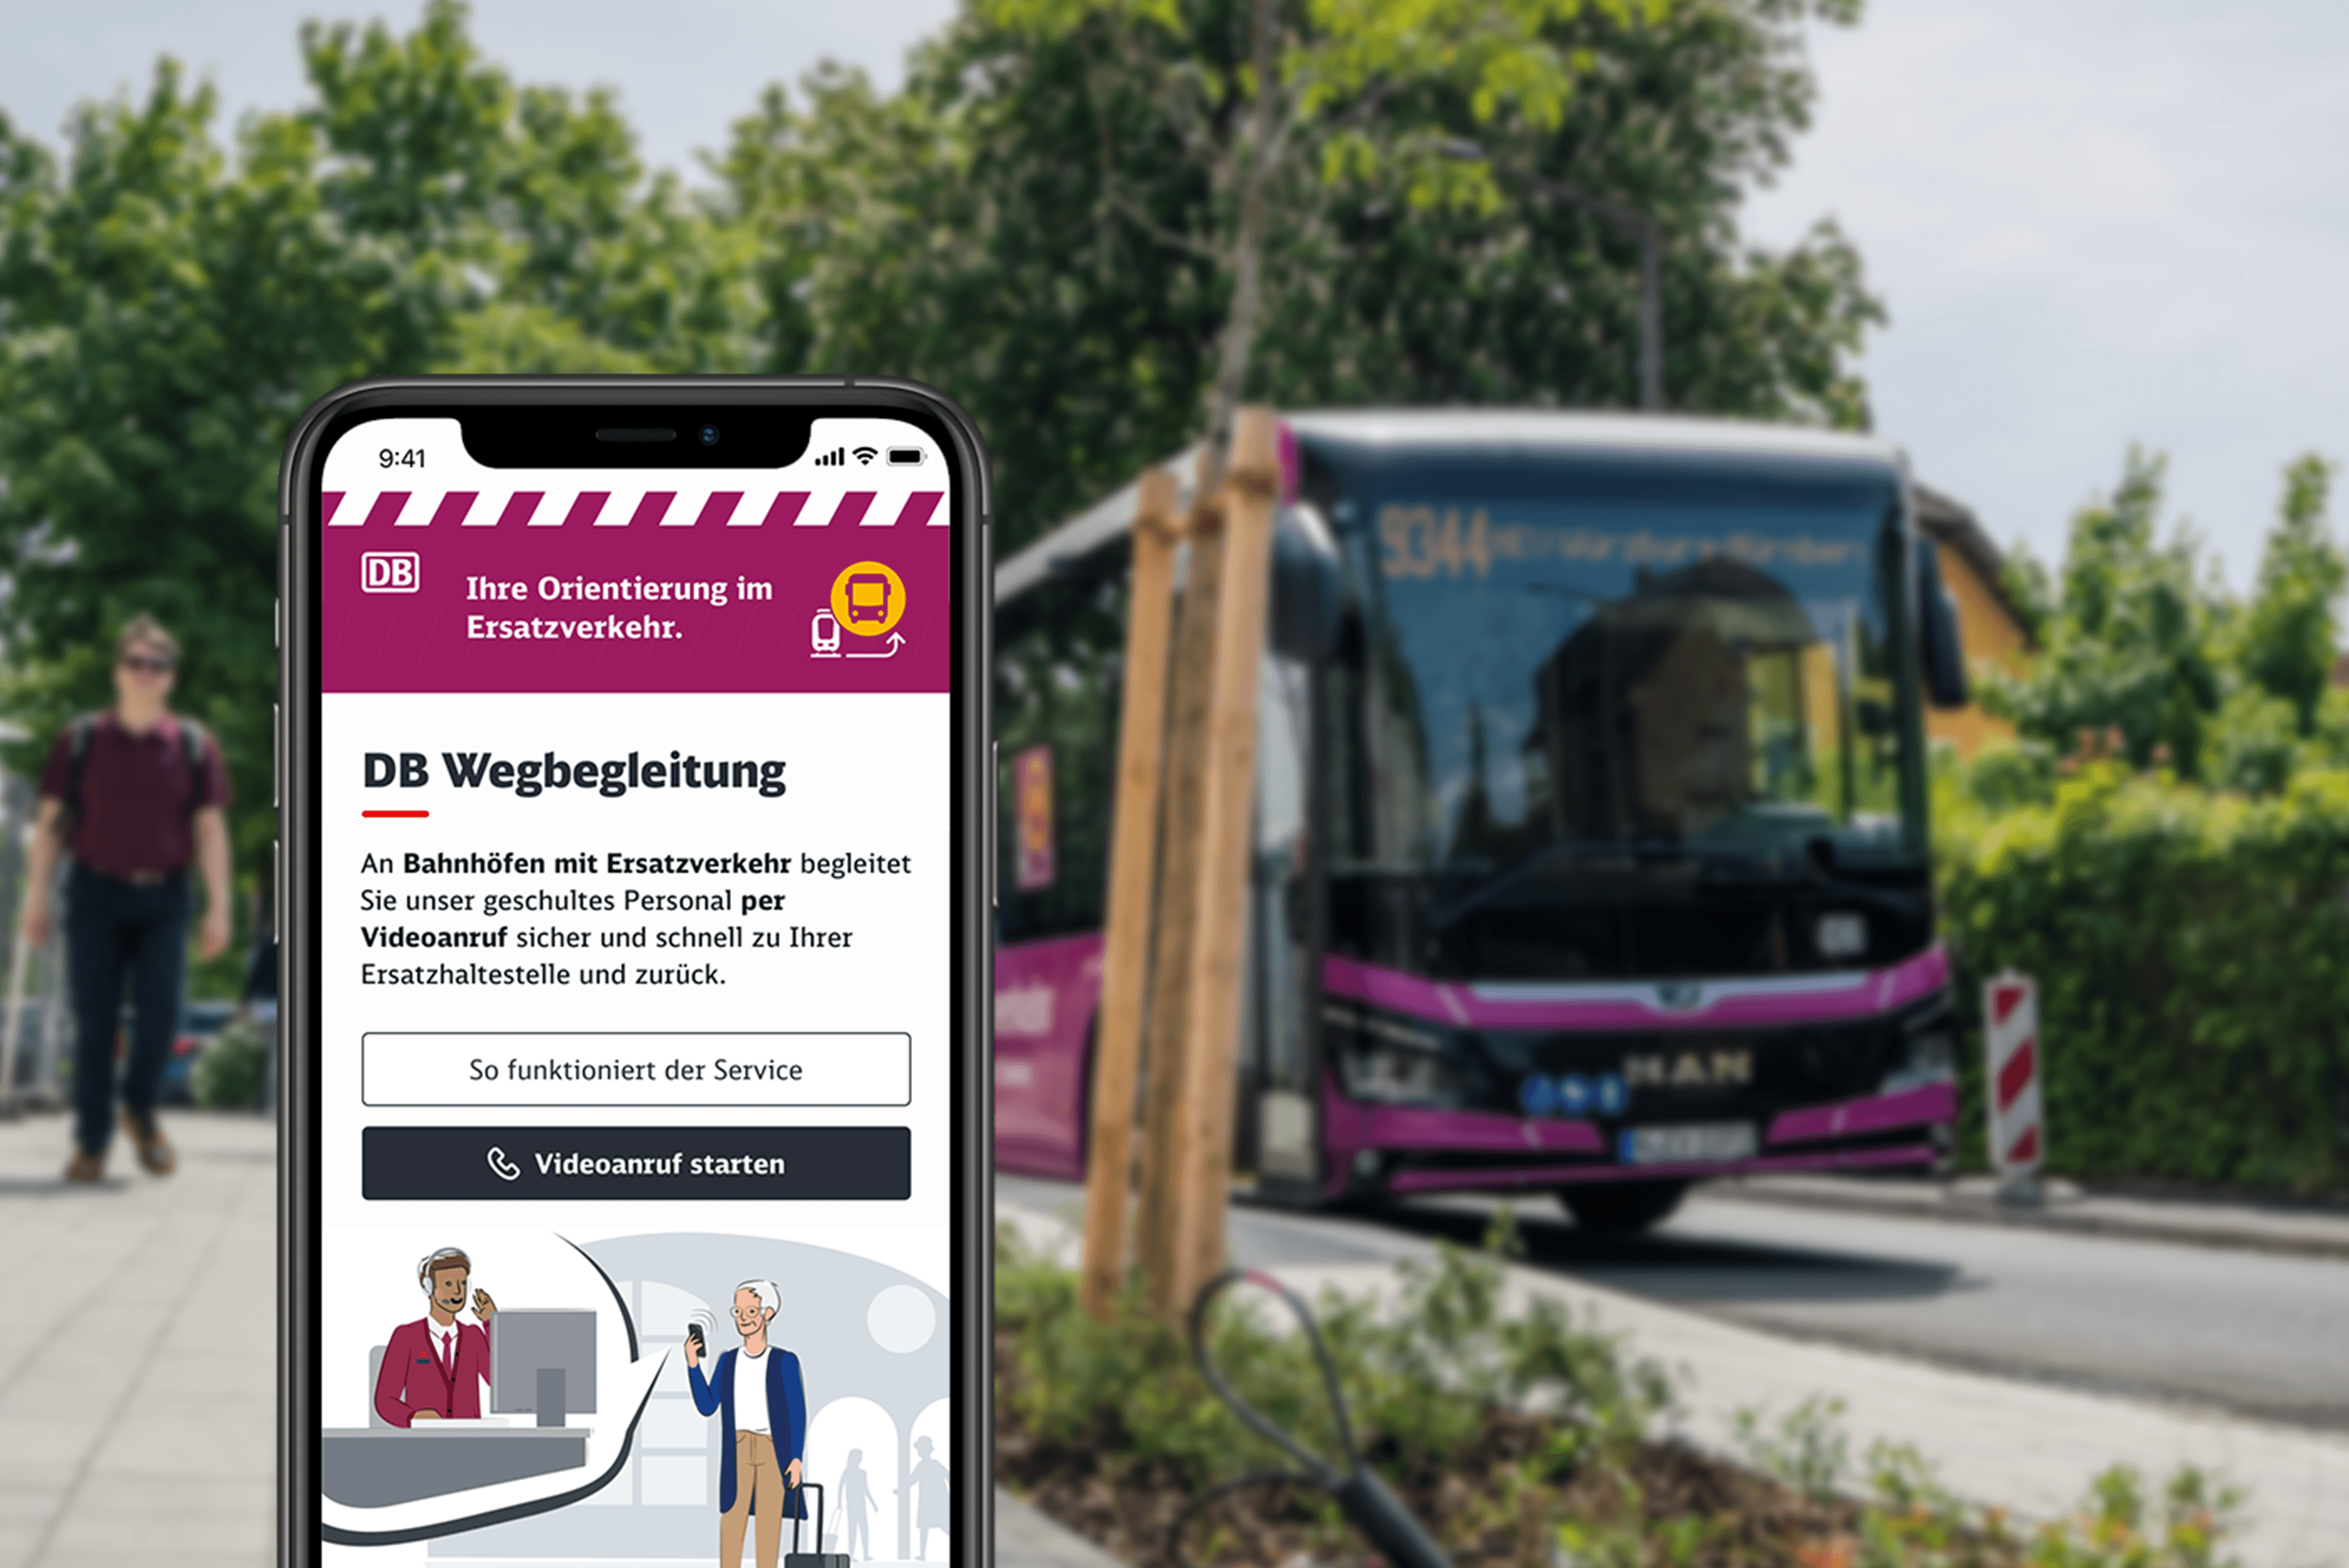 Ein Smartphone mit dem geöffneten Startbildschirm der DB Wegbegleitung vor einem Bus des Ersatzverkehrs.